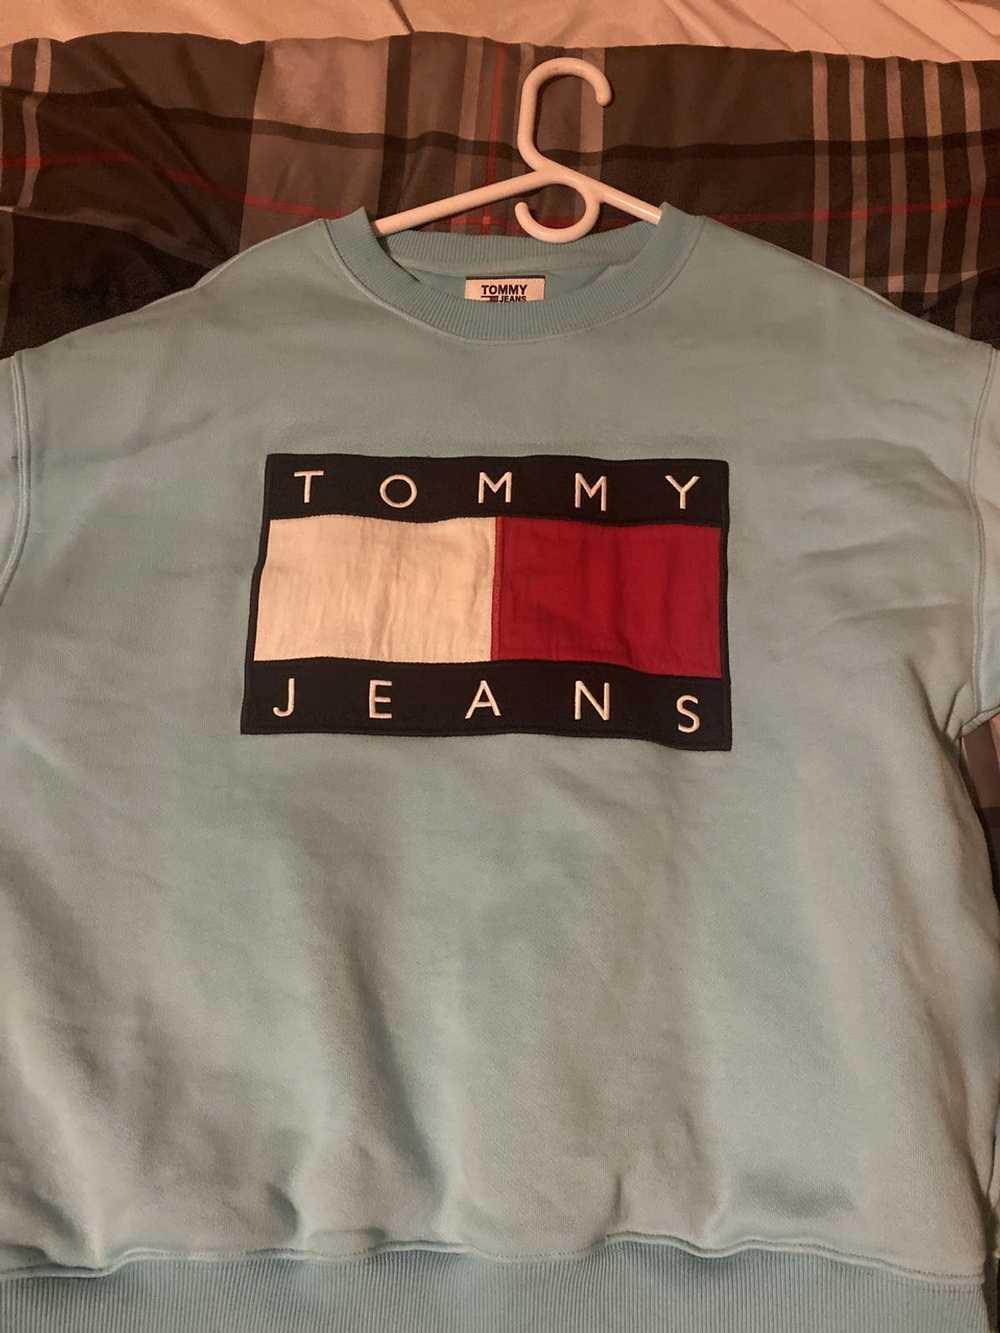 Tommy Hilfiger Vintage Tommy Hilfiger Sweatshirt - image 1